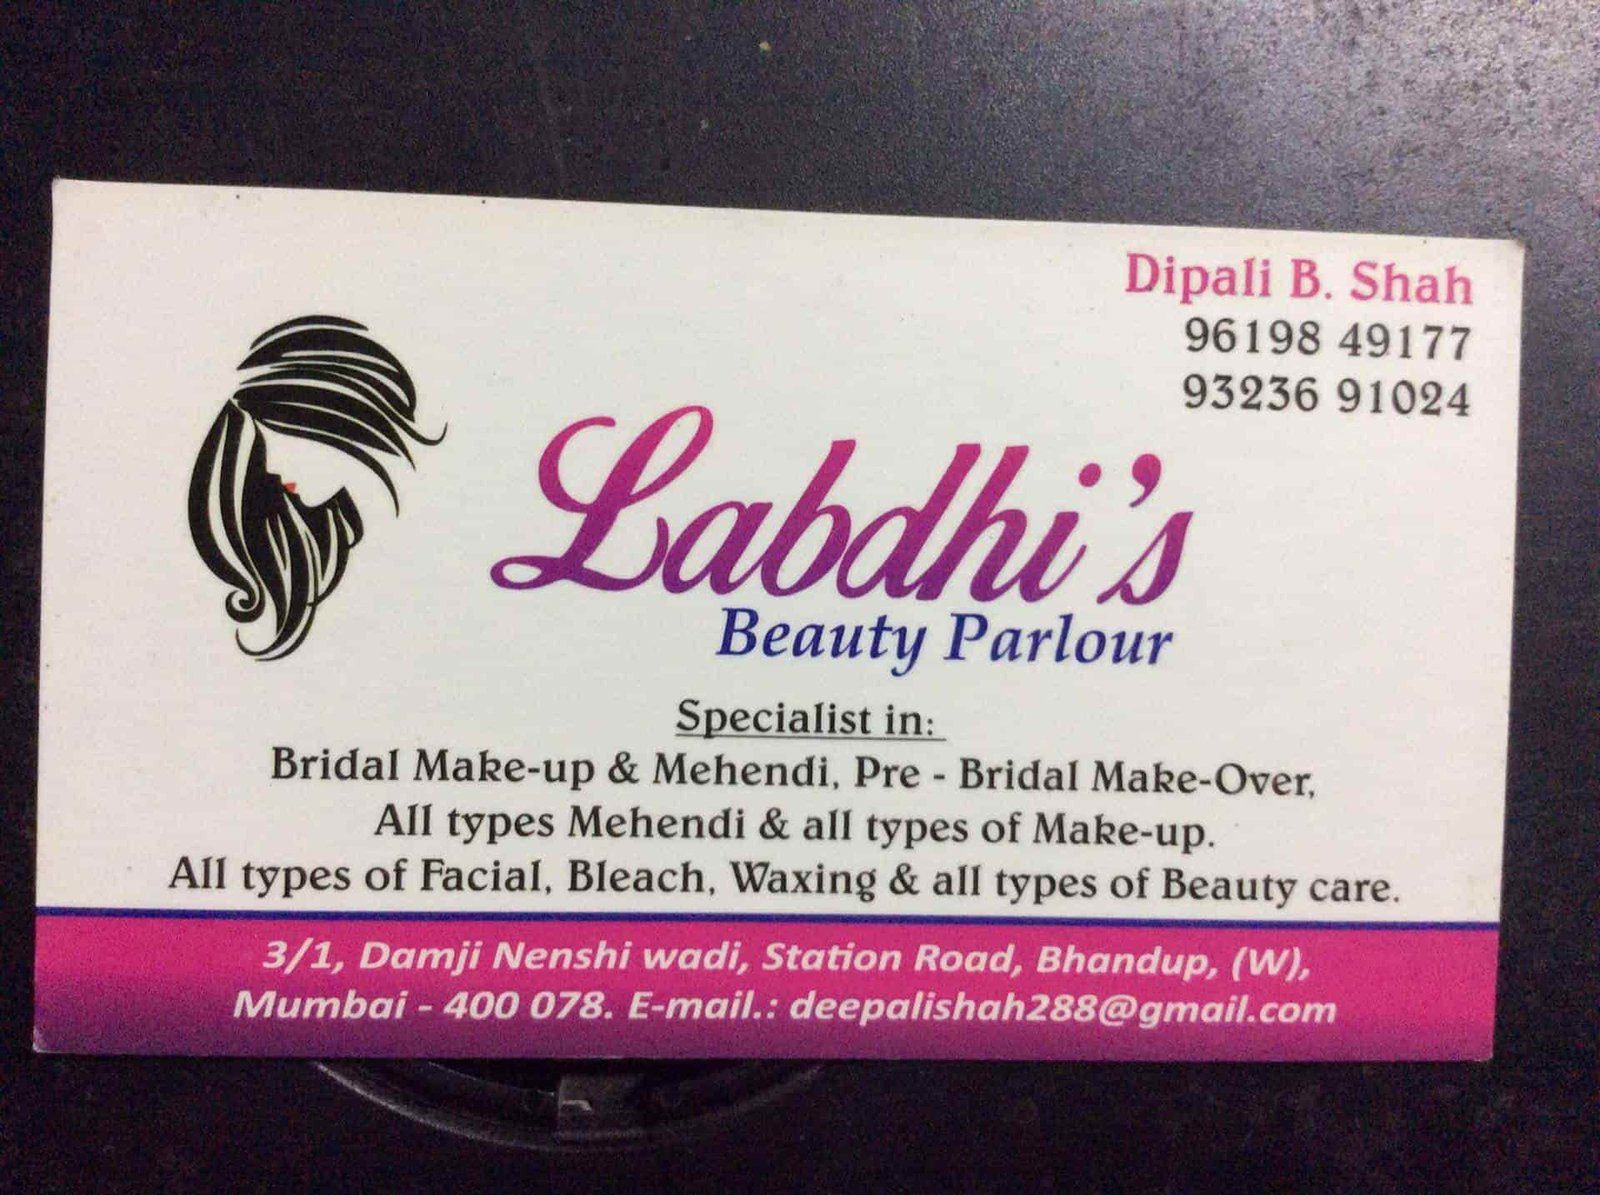 Labdhi's Beauty Parlour